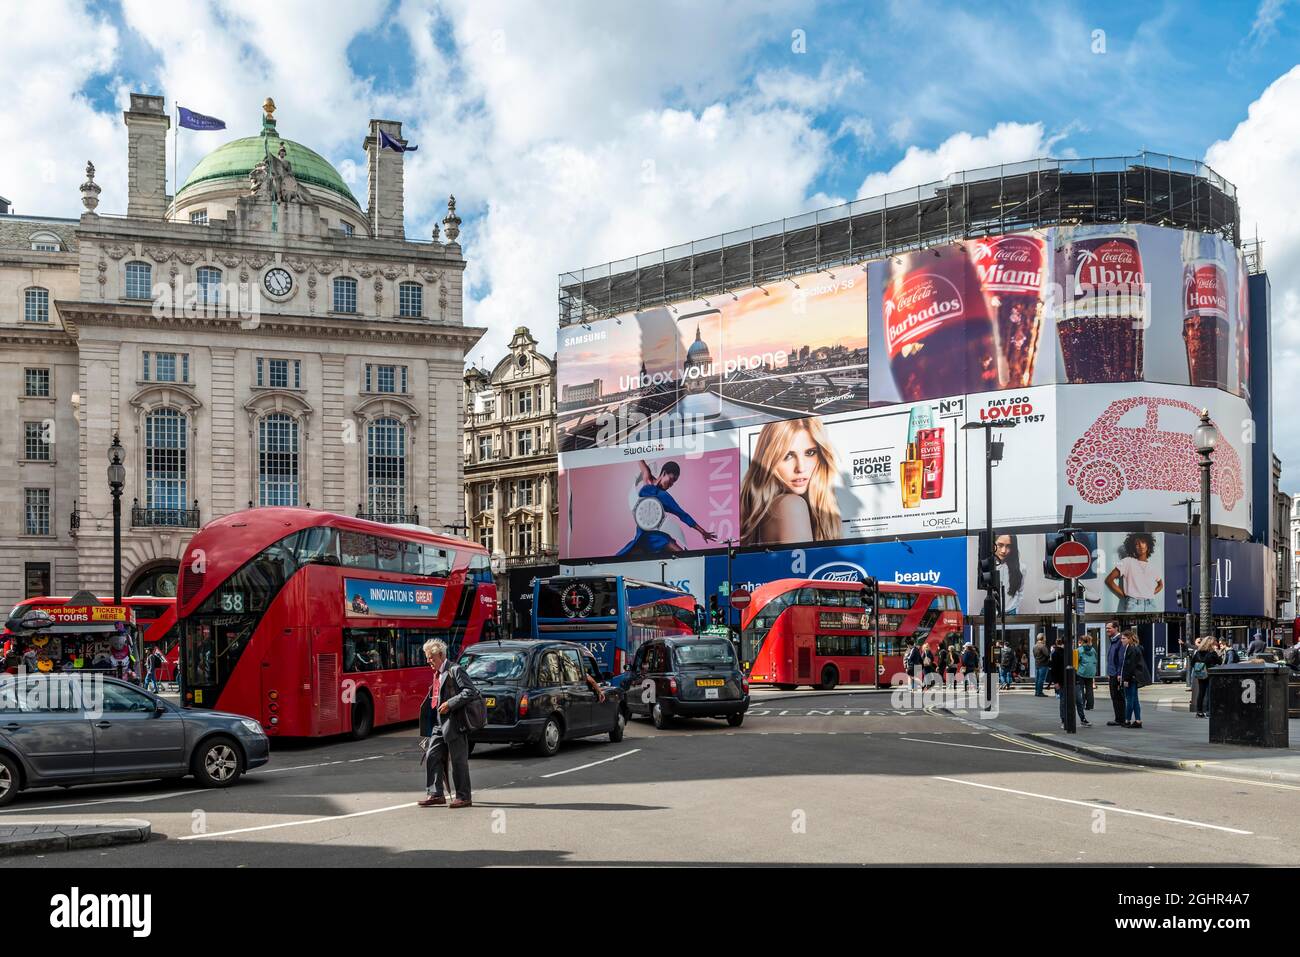 Bâtiment avec des bannières publicitaires, Piccadilly Lights, rue animée avec des bus rouges, Picadilly Circus, Londres, Angleterre, Royaume-Uni Banque D'Images